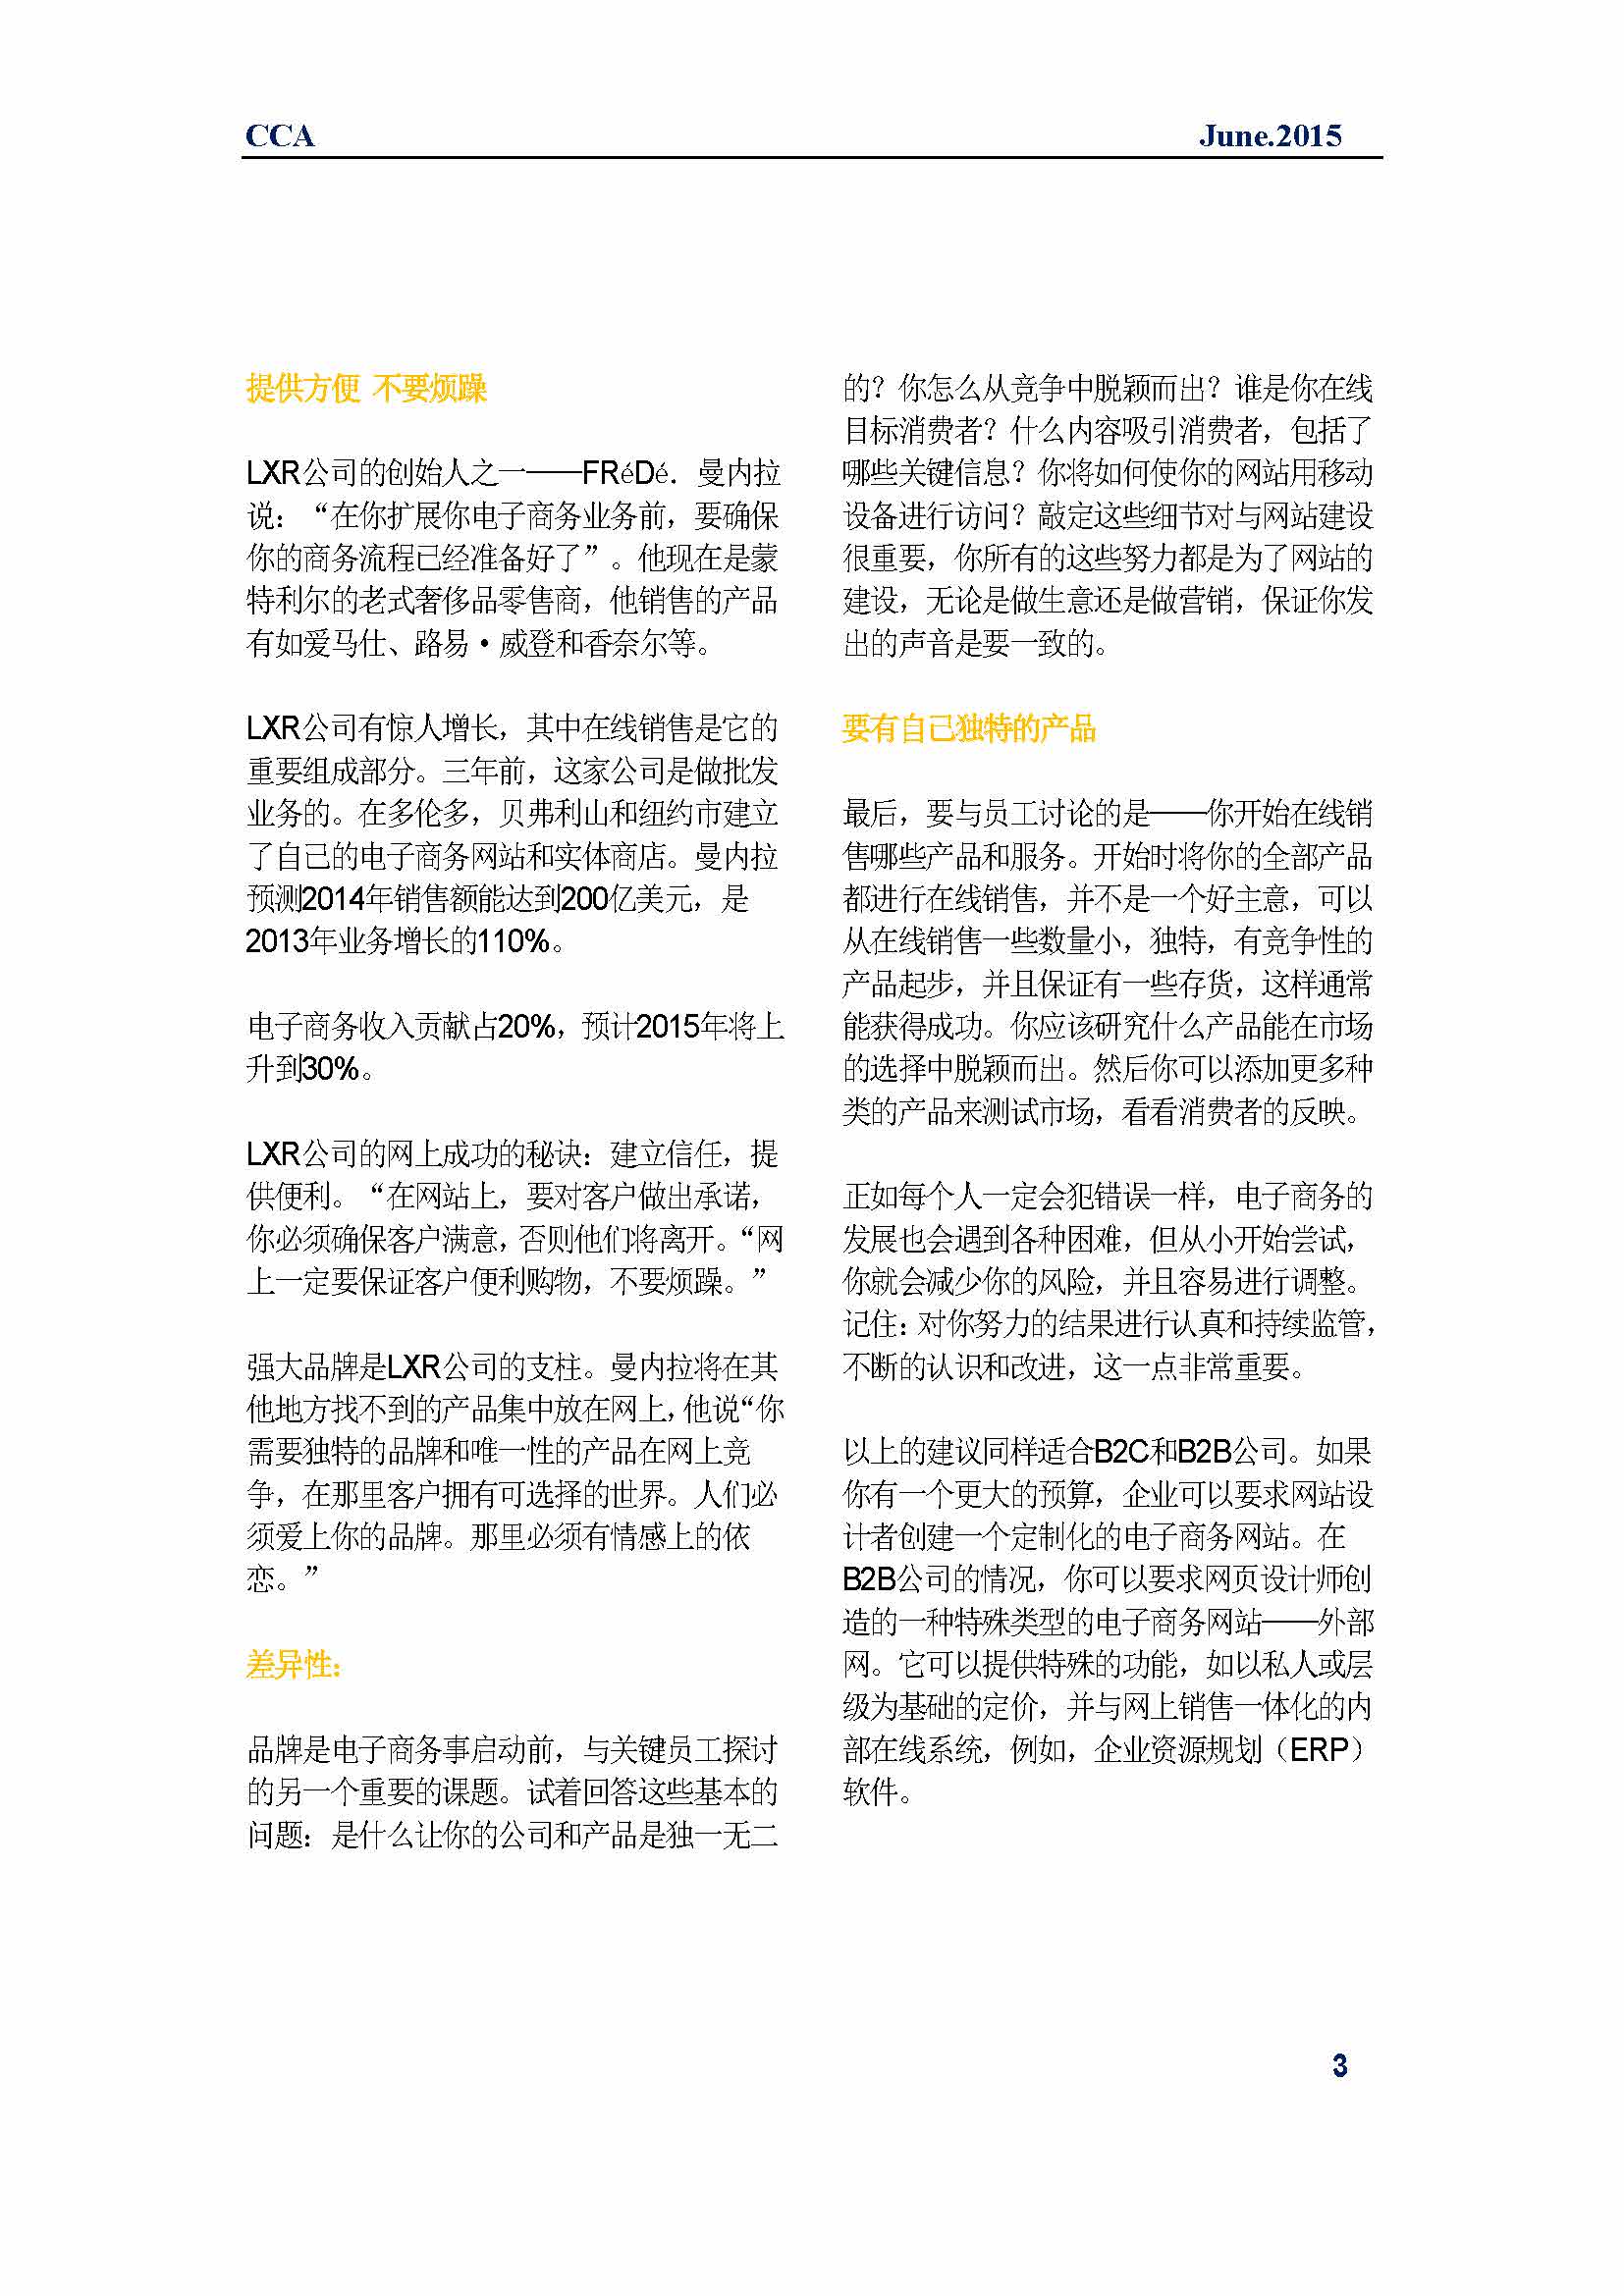 中国科技咨询协会国际快讯（第二十四期）_页面_06.jpg